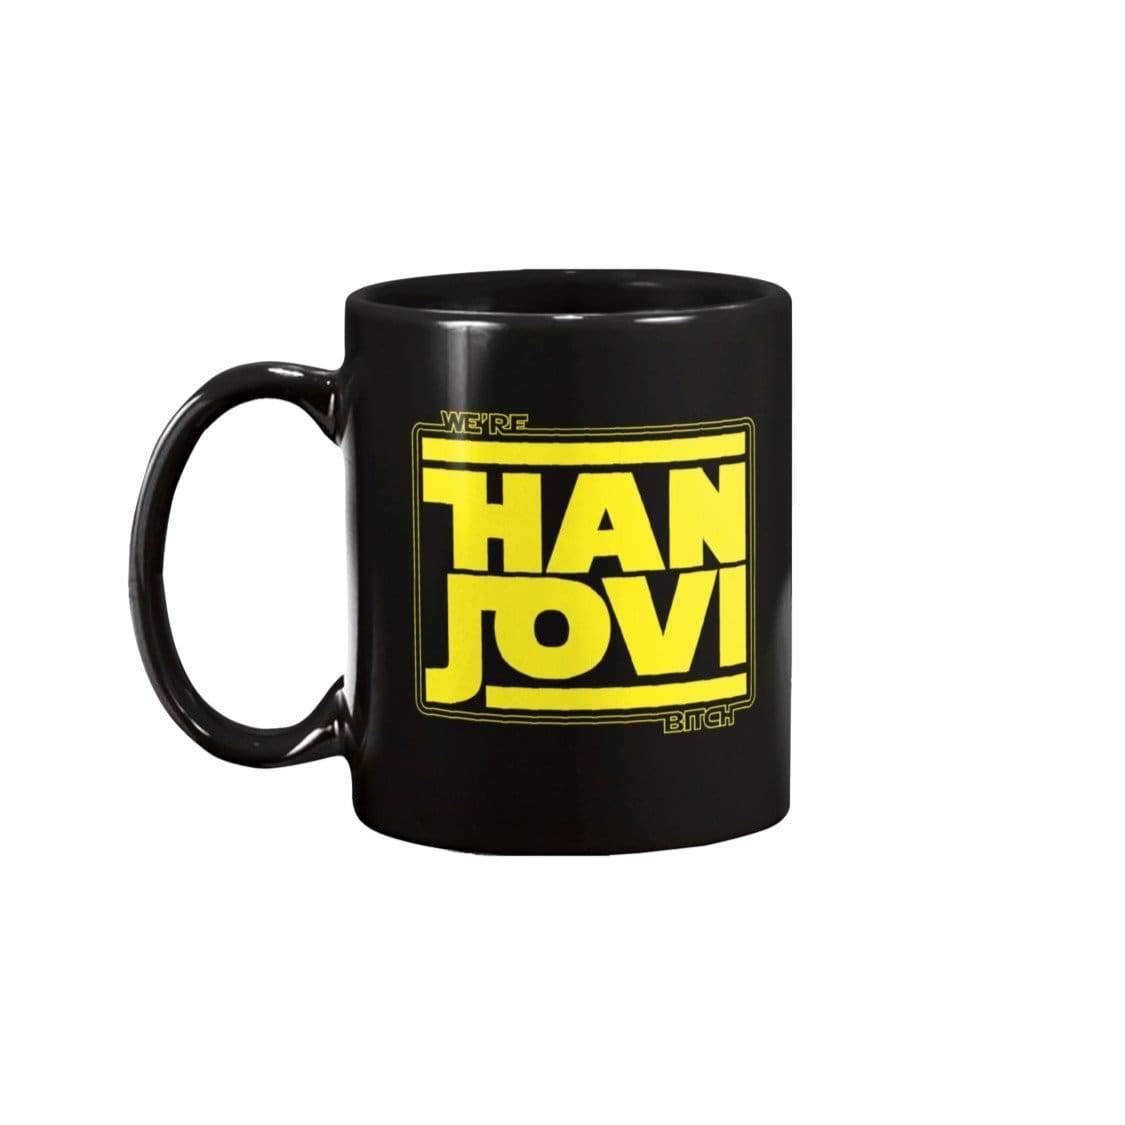 DSC We’re Han Jovi 15oz Coffee Mug - Black / 15OZ - Mugs